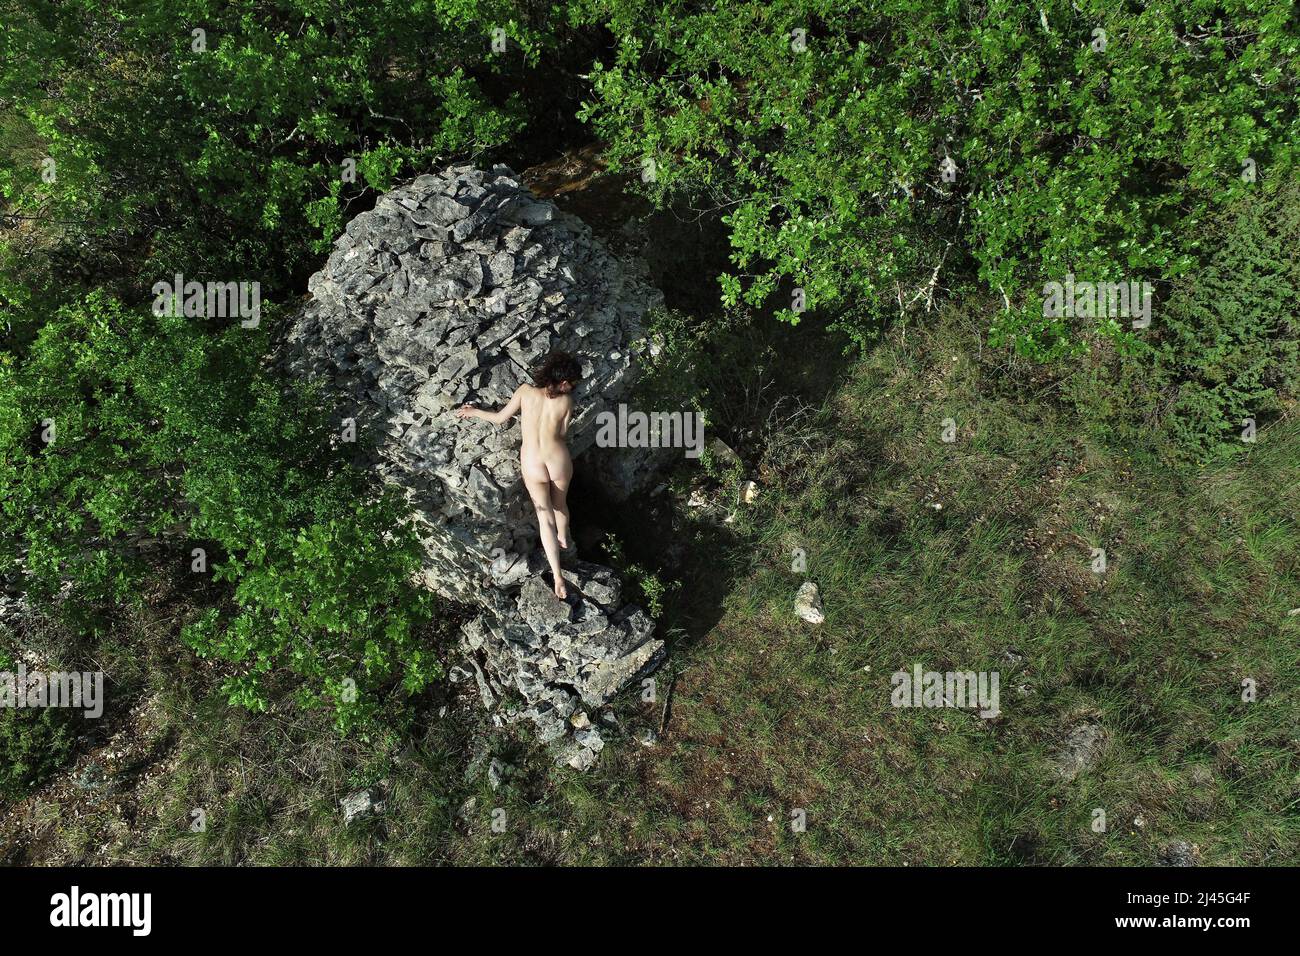 Drone vue aérienne d'une femme nue au milieu de la nature, près d'une cabane en pierre sèche Banque D'Images